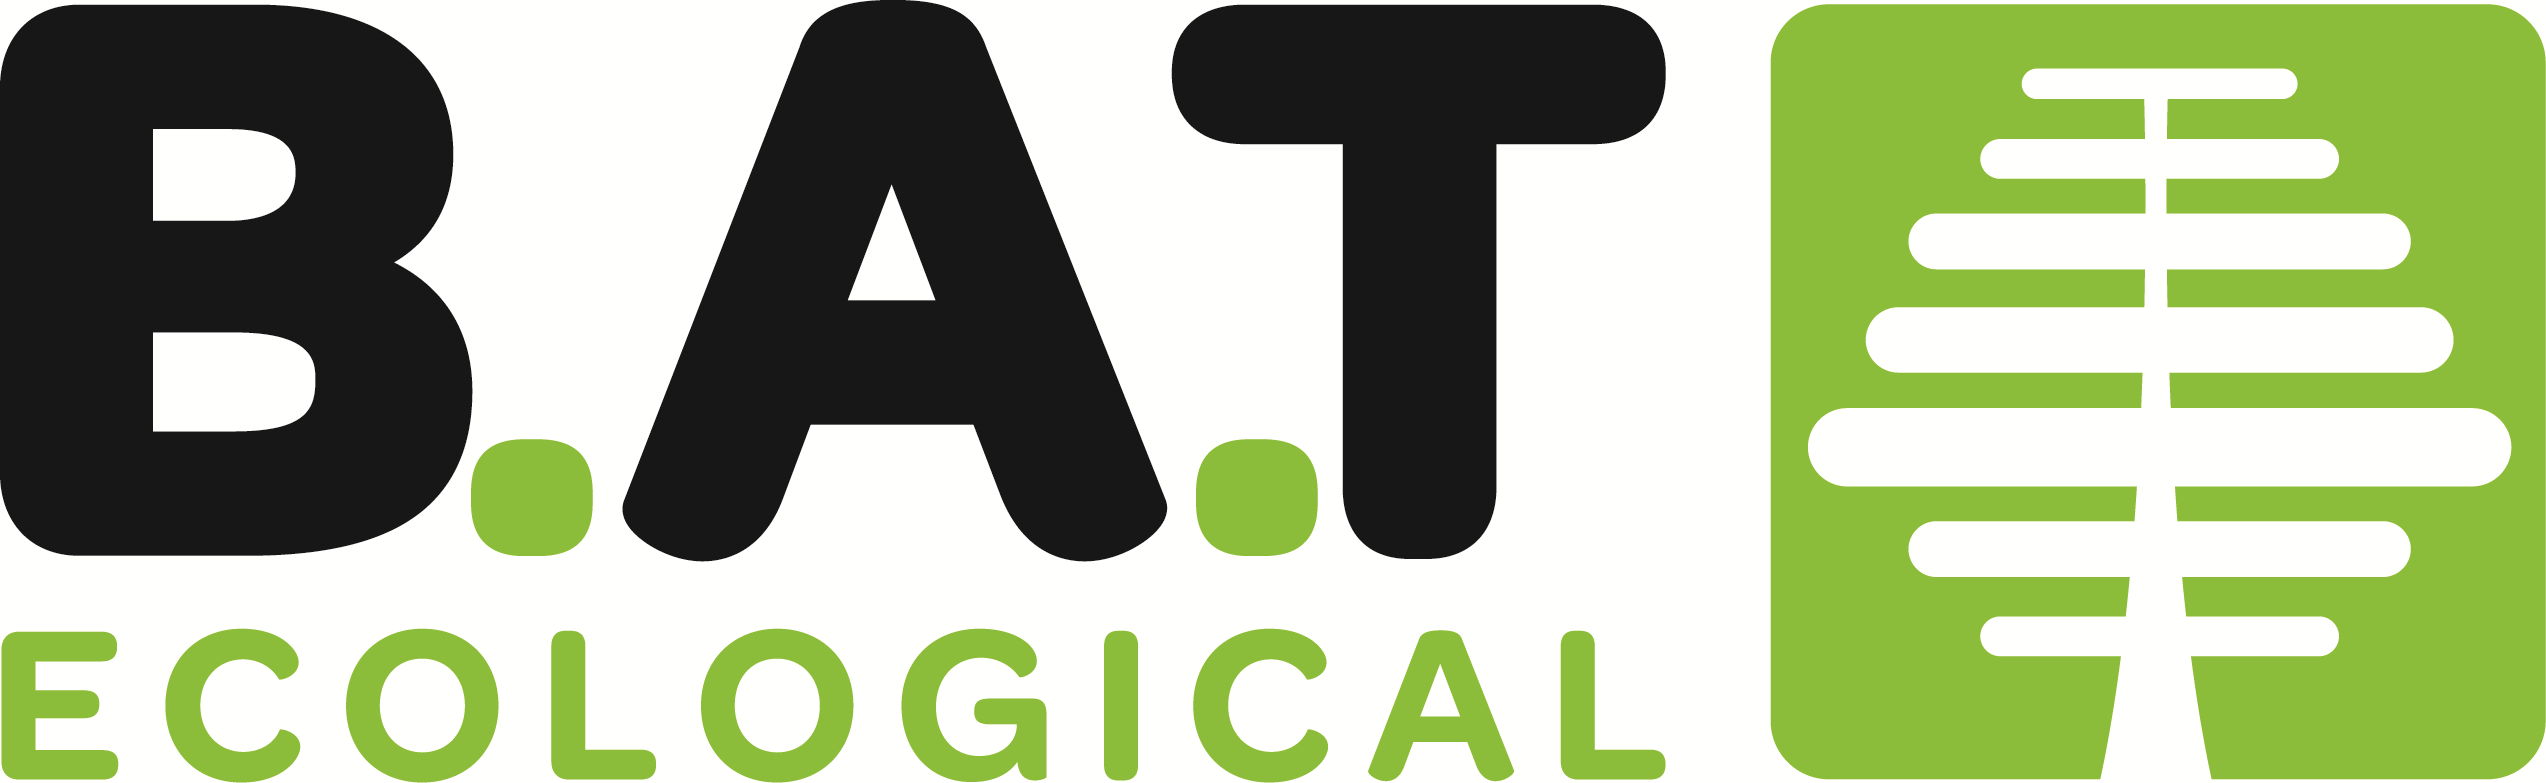 B.A.T. Ecological Ltd.